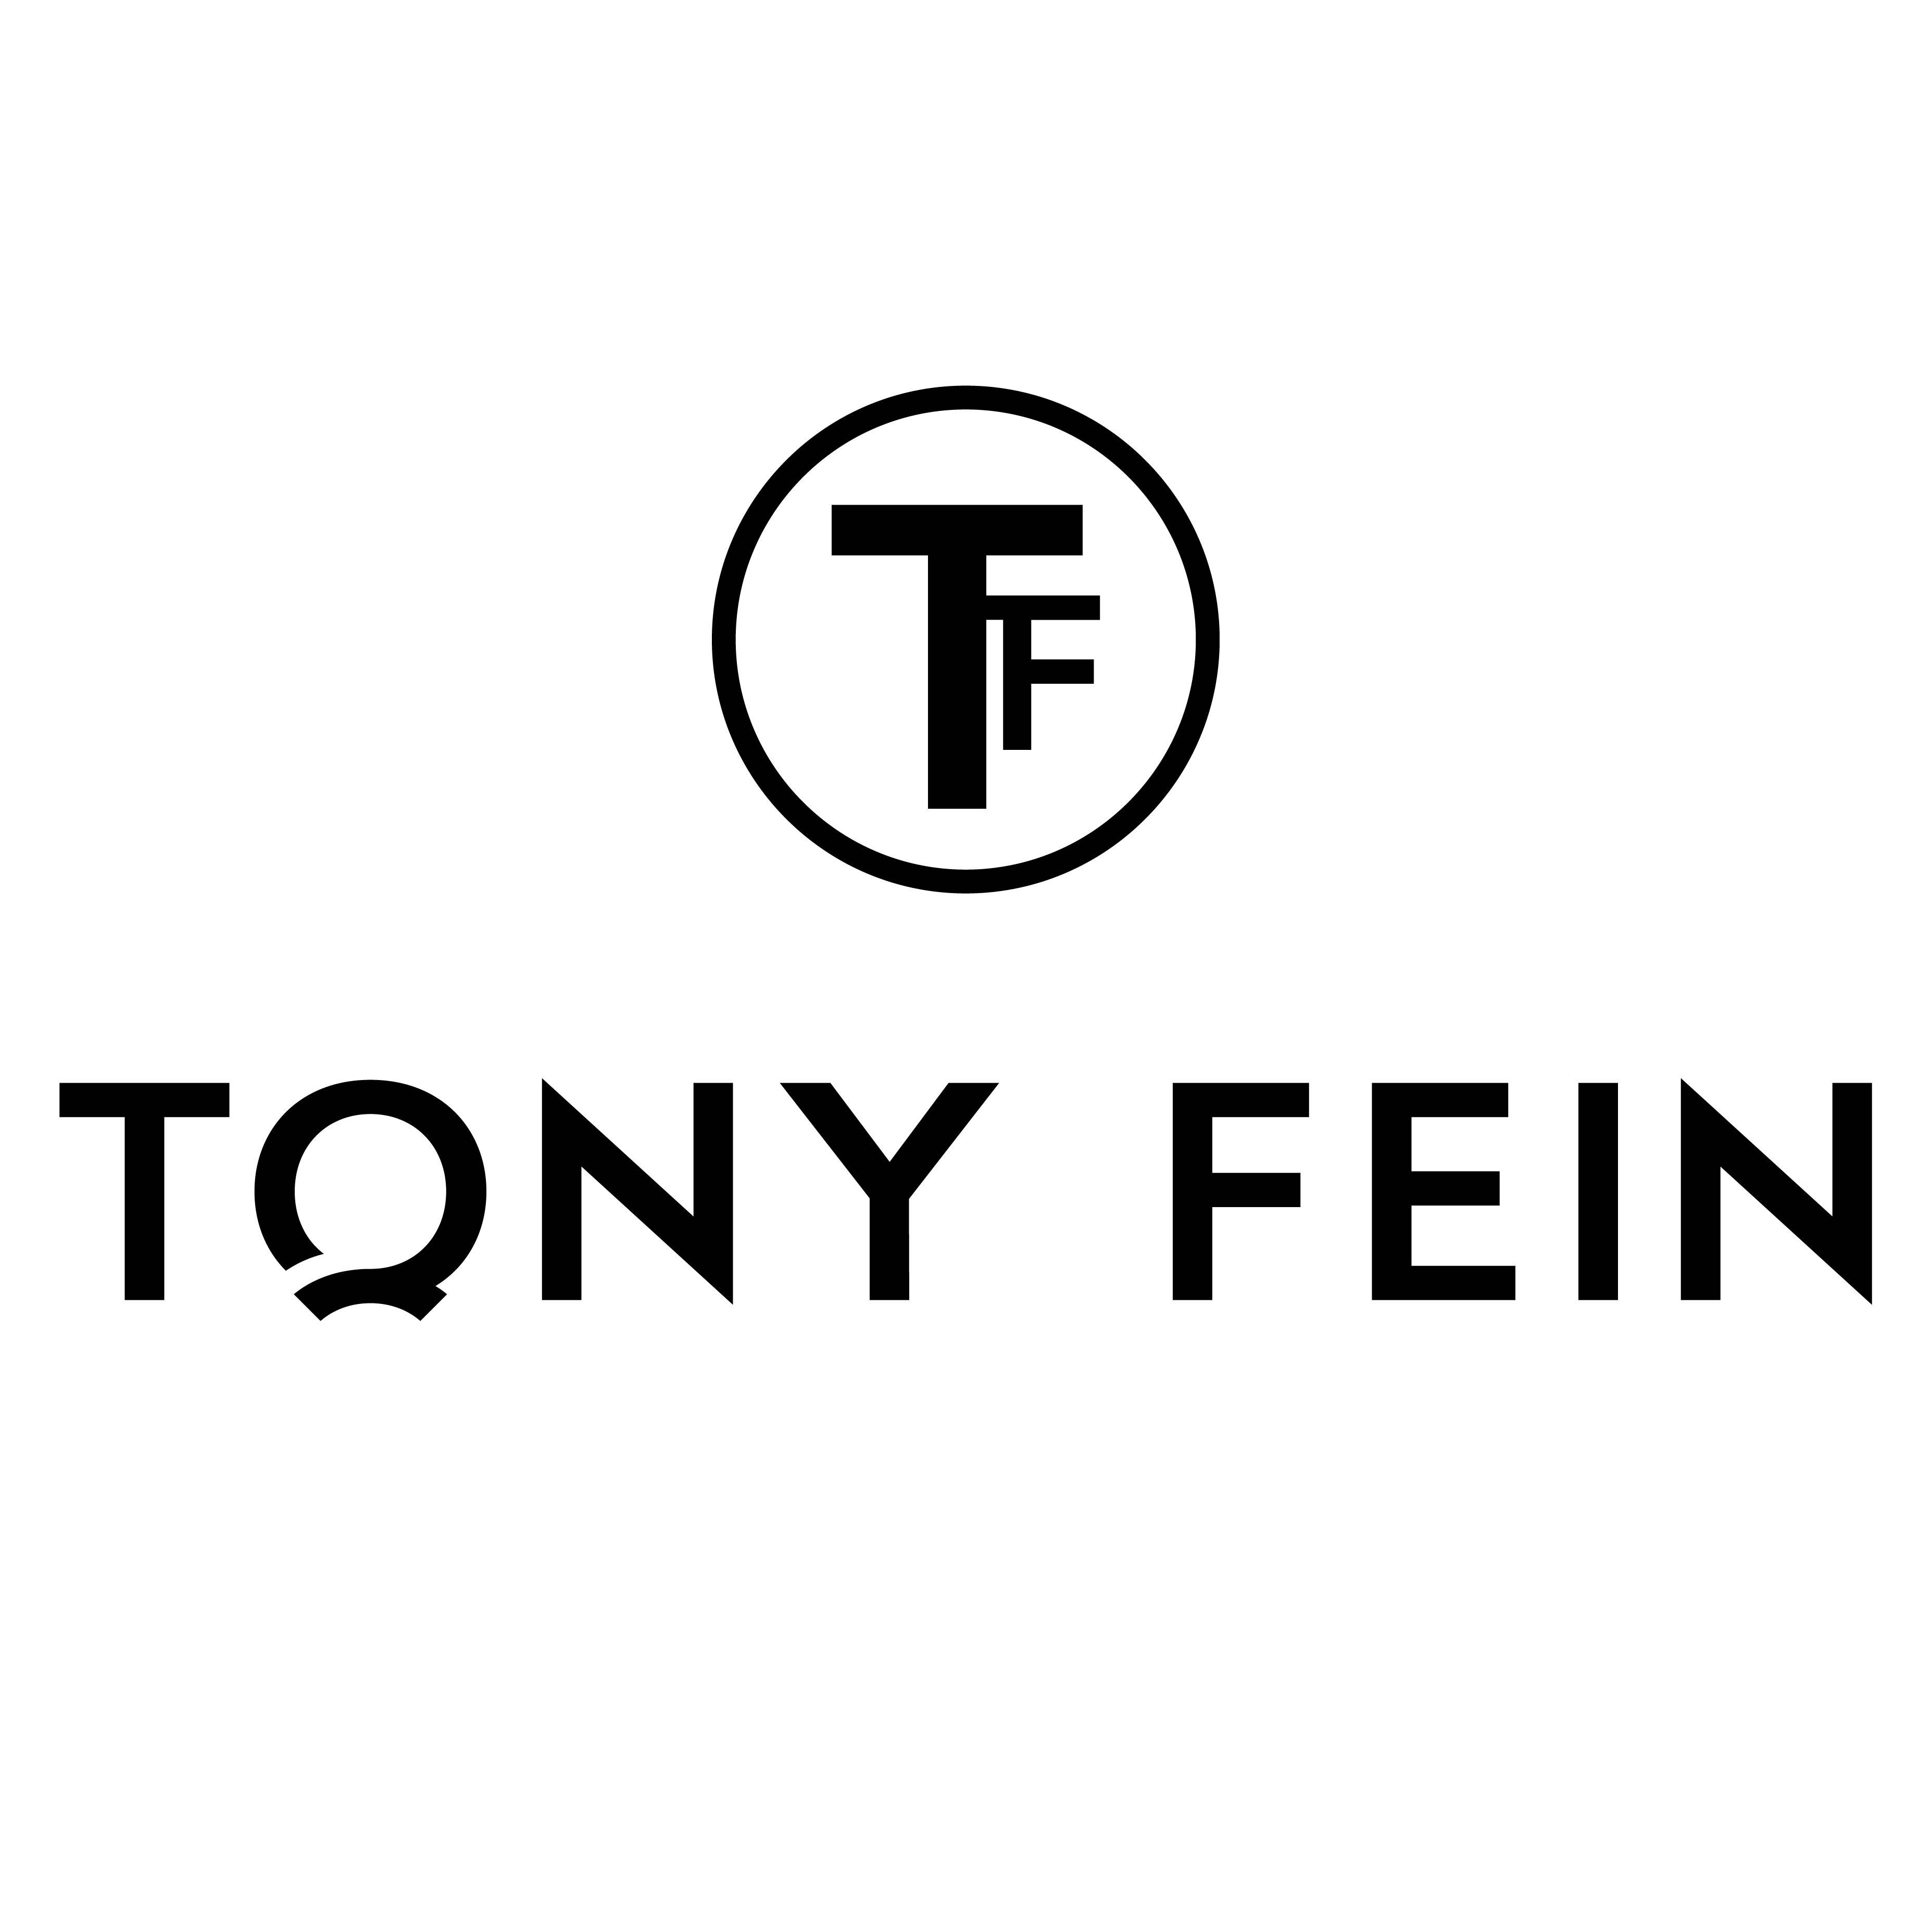 Tony Fein